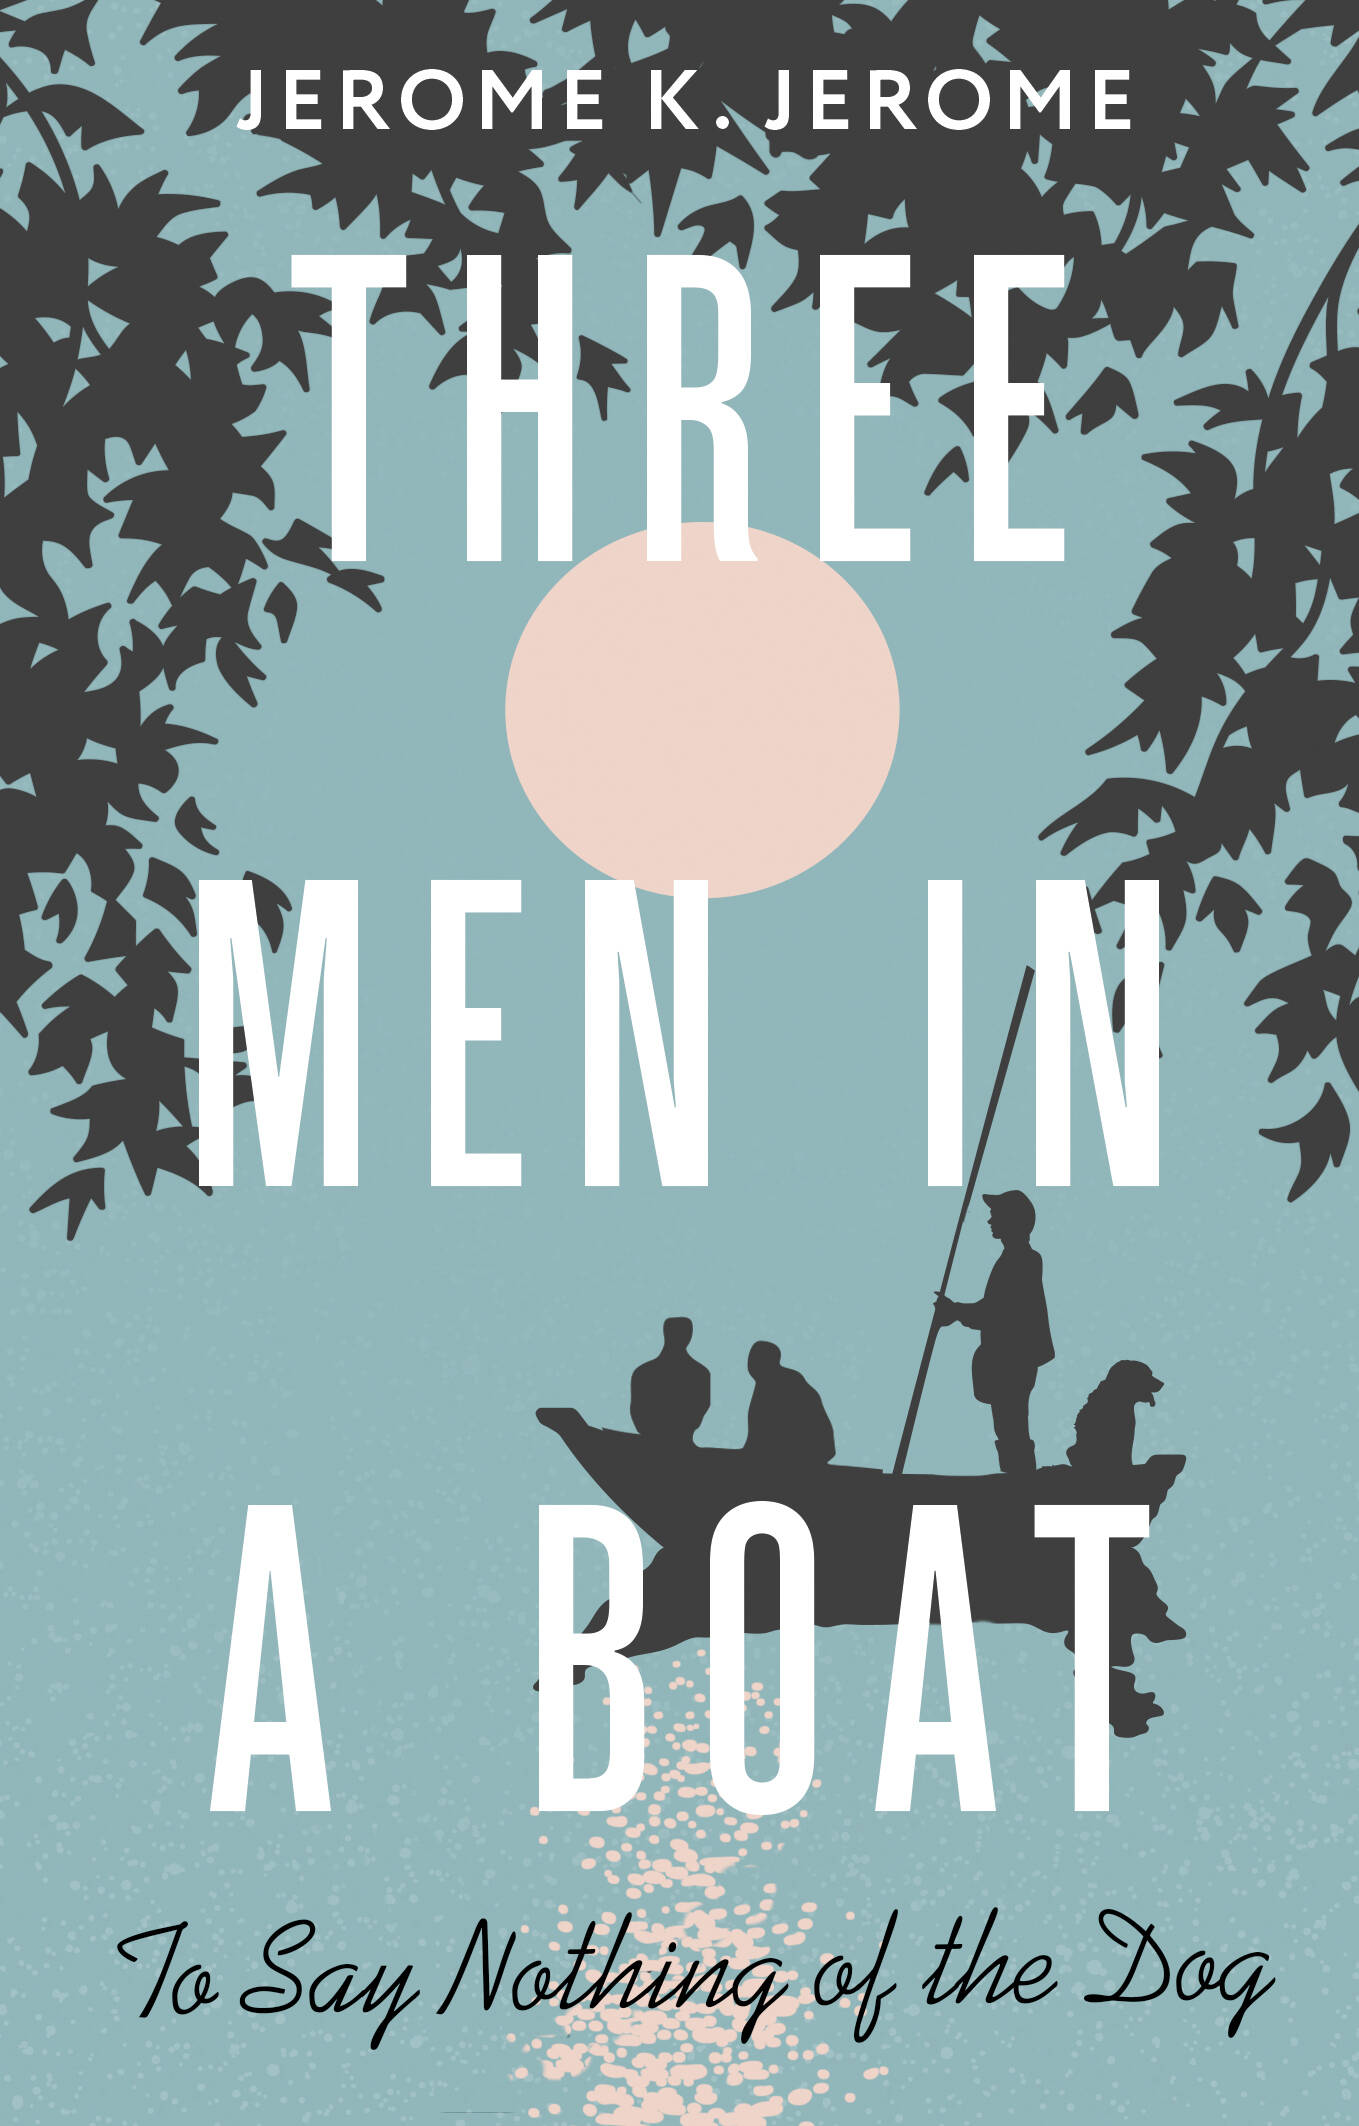 Джером Джером Клапка Three Men in a Boat (To say Nothing of the Dog) джером джером клапка three men in a boat зарклчитвориг jerome на англ яз